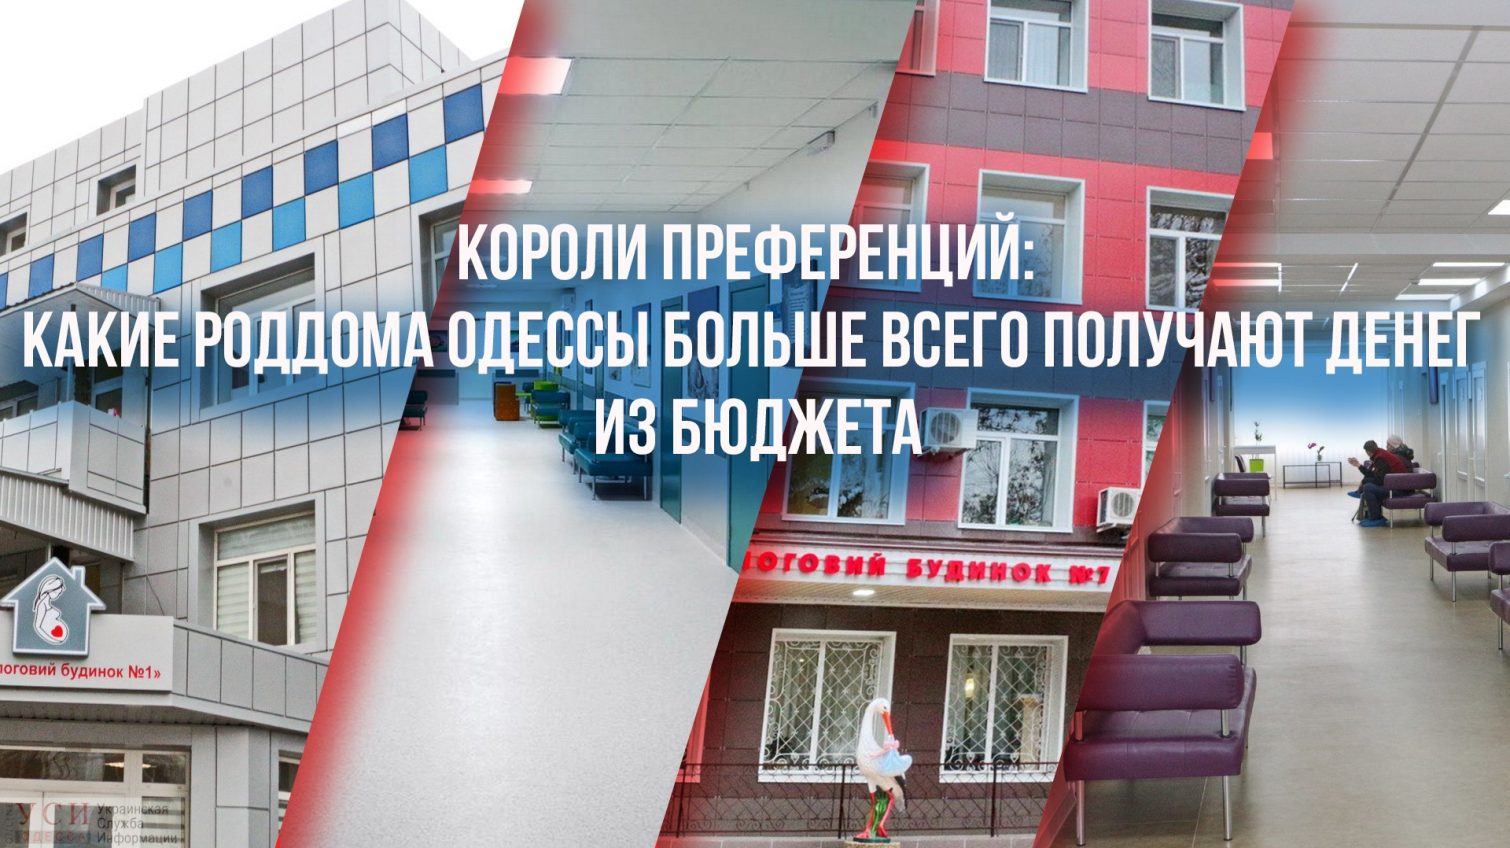 Короли преференций: какие роддома Одессы получают больше всего денег из бюджета «фото»